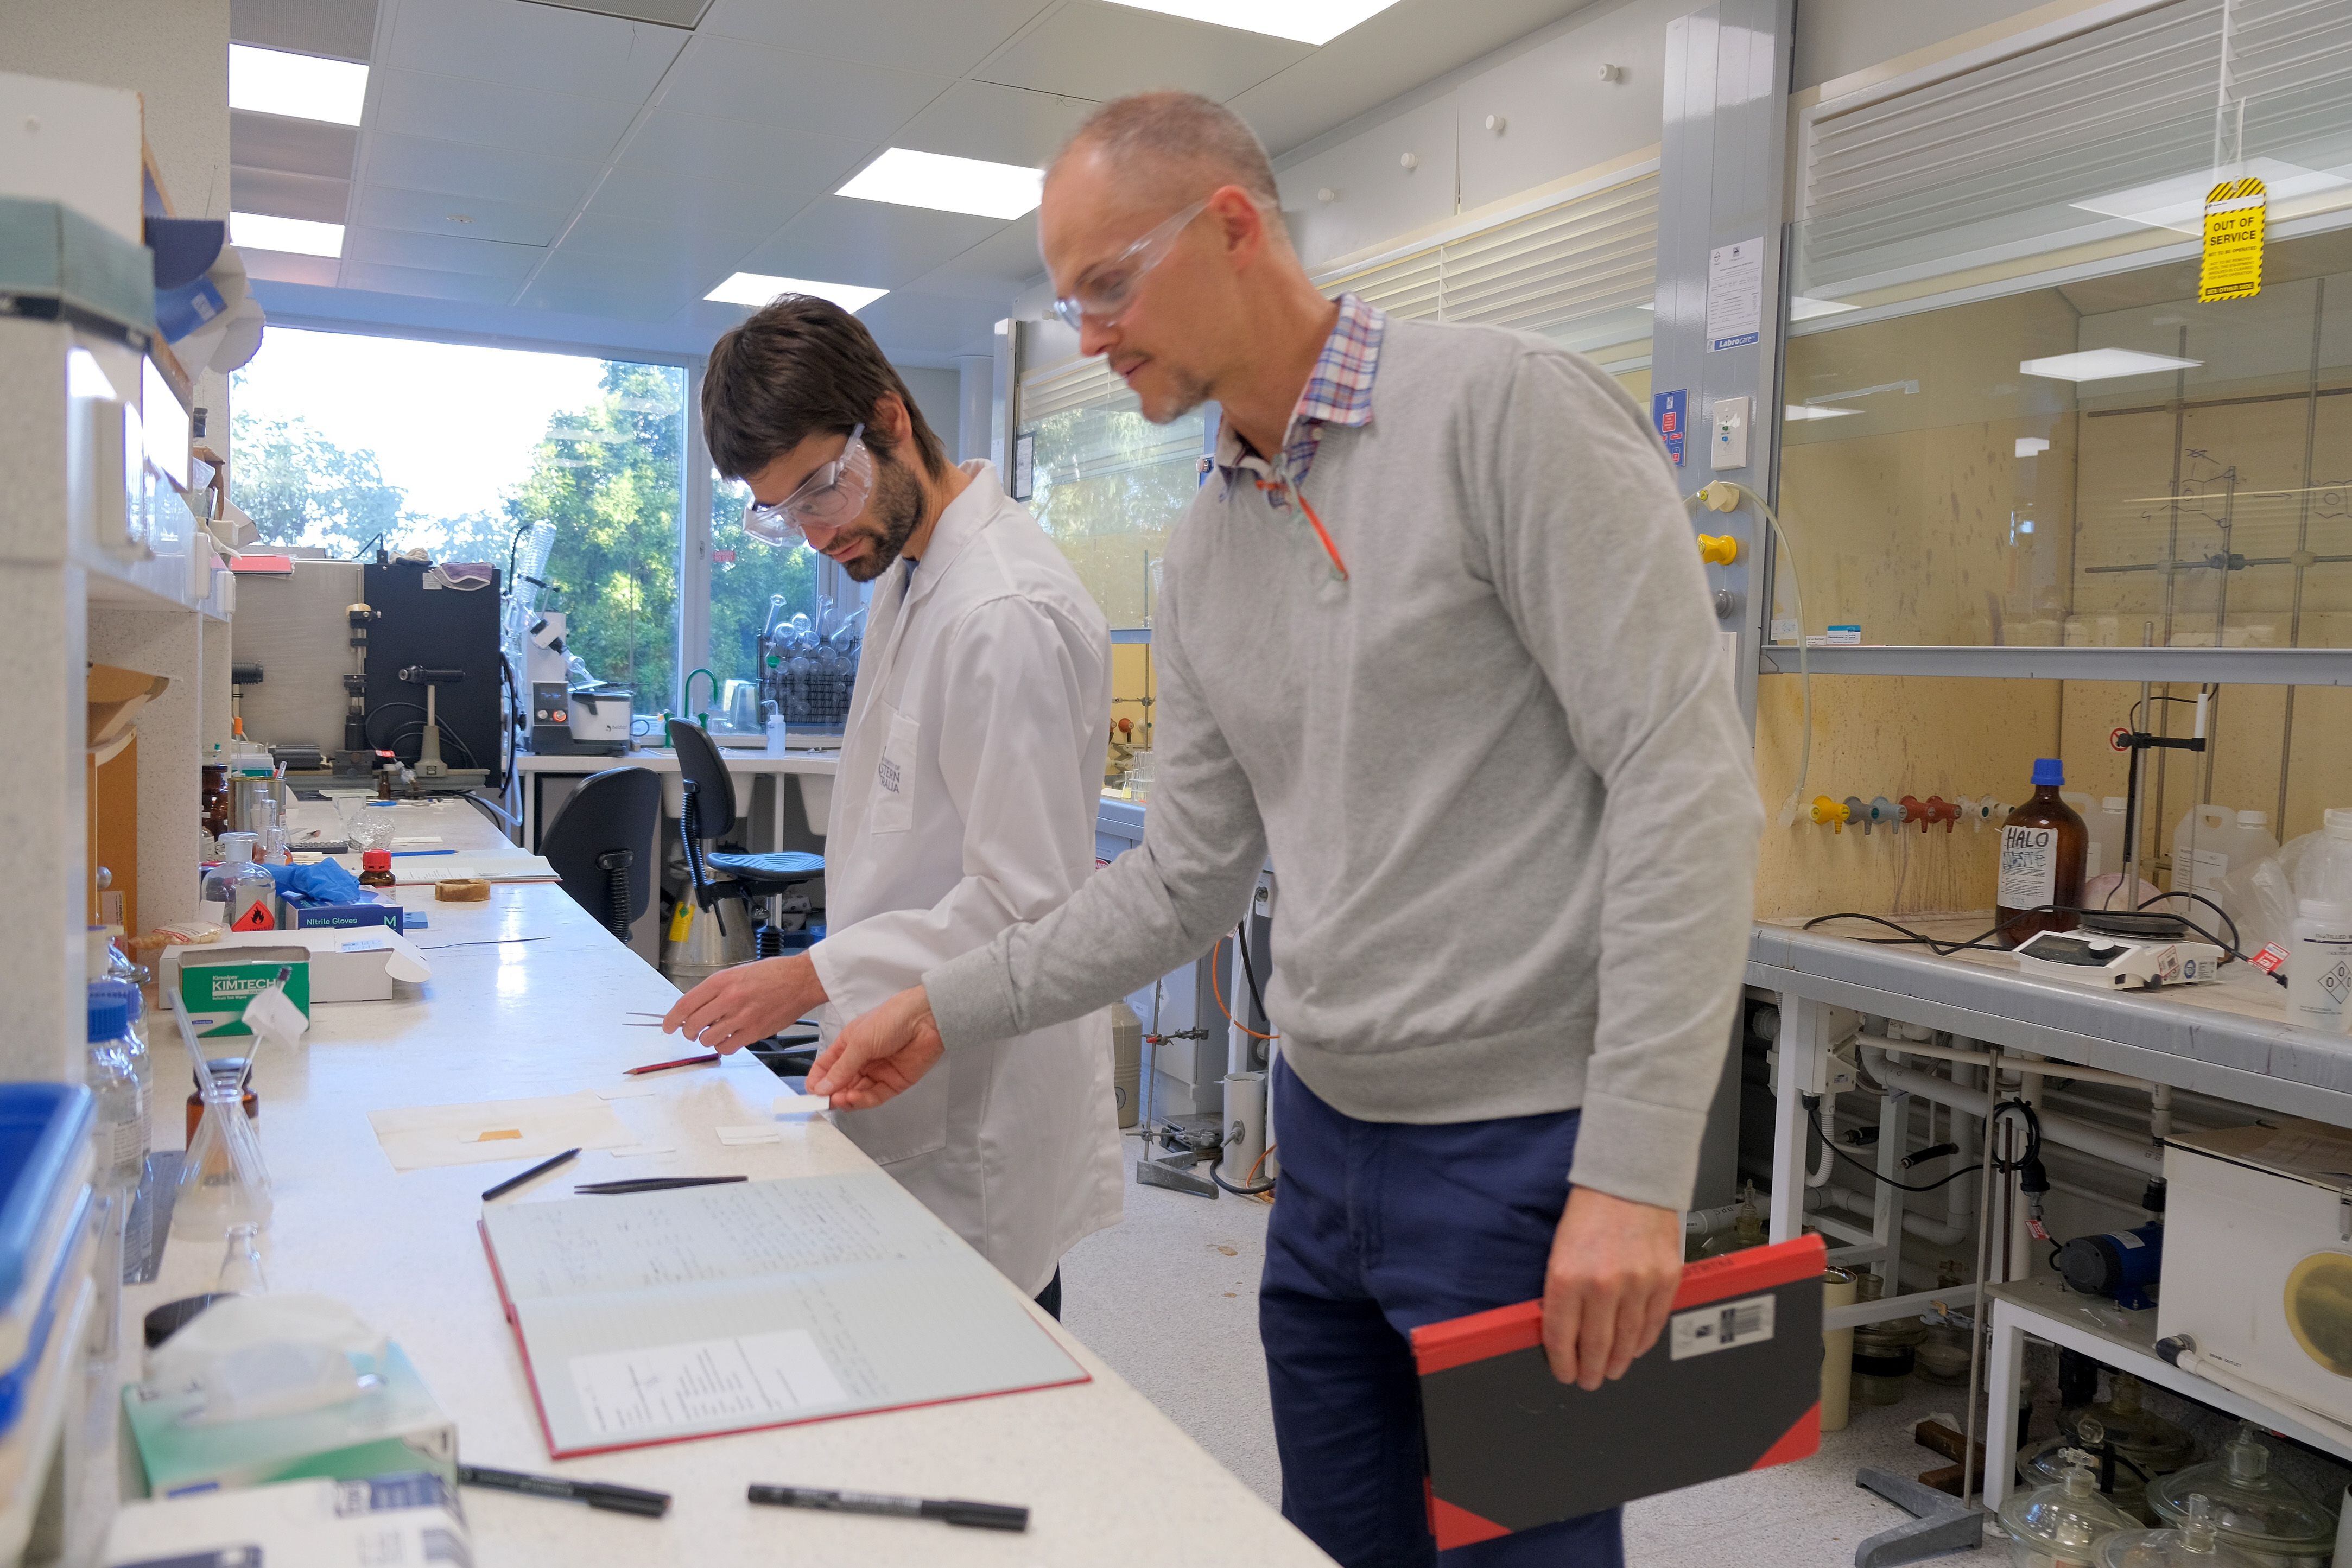 Mark Walkey, a la izquierda, y Matthew Piggott examinan muestras en un laboratorio de la Universidad de Australia Occidental, donde intentan acortar la duración de los efectos de la MDMA y eliminar una propiedad adictiva débil. (Frances Vinall/The Washington Post)